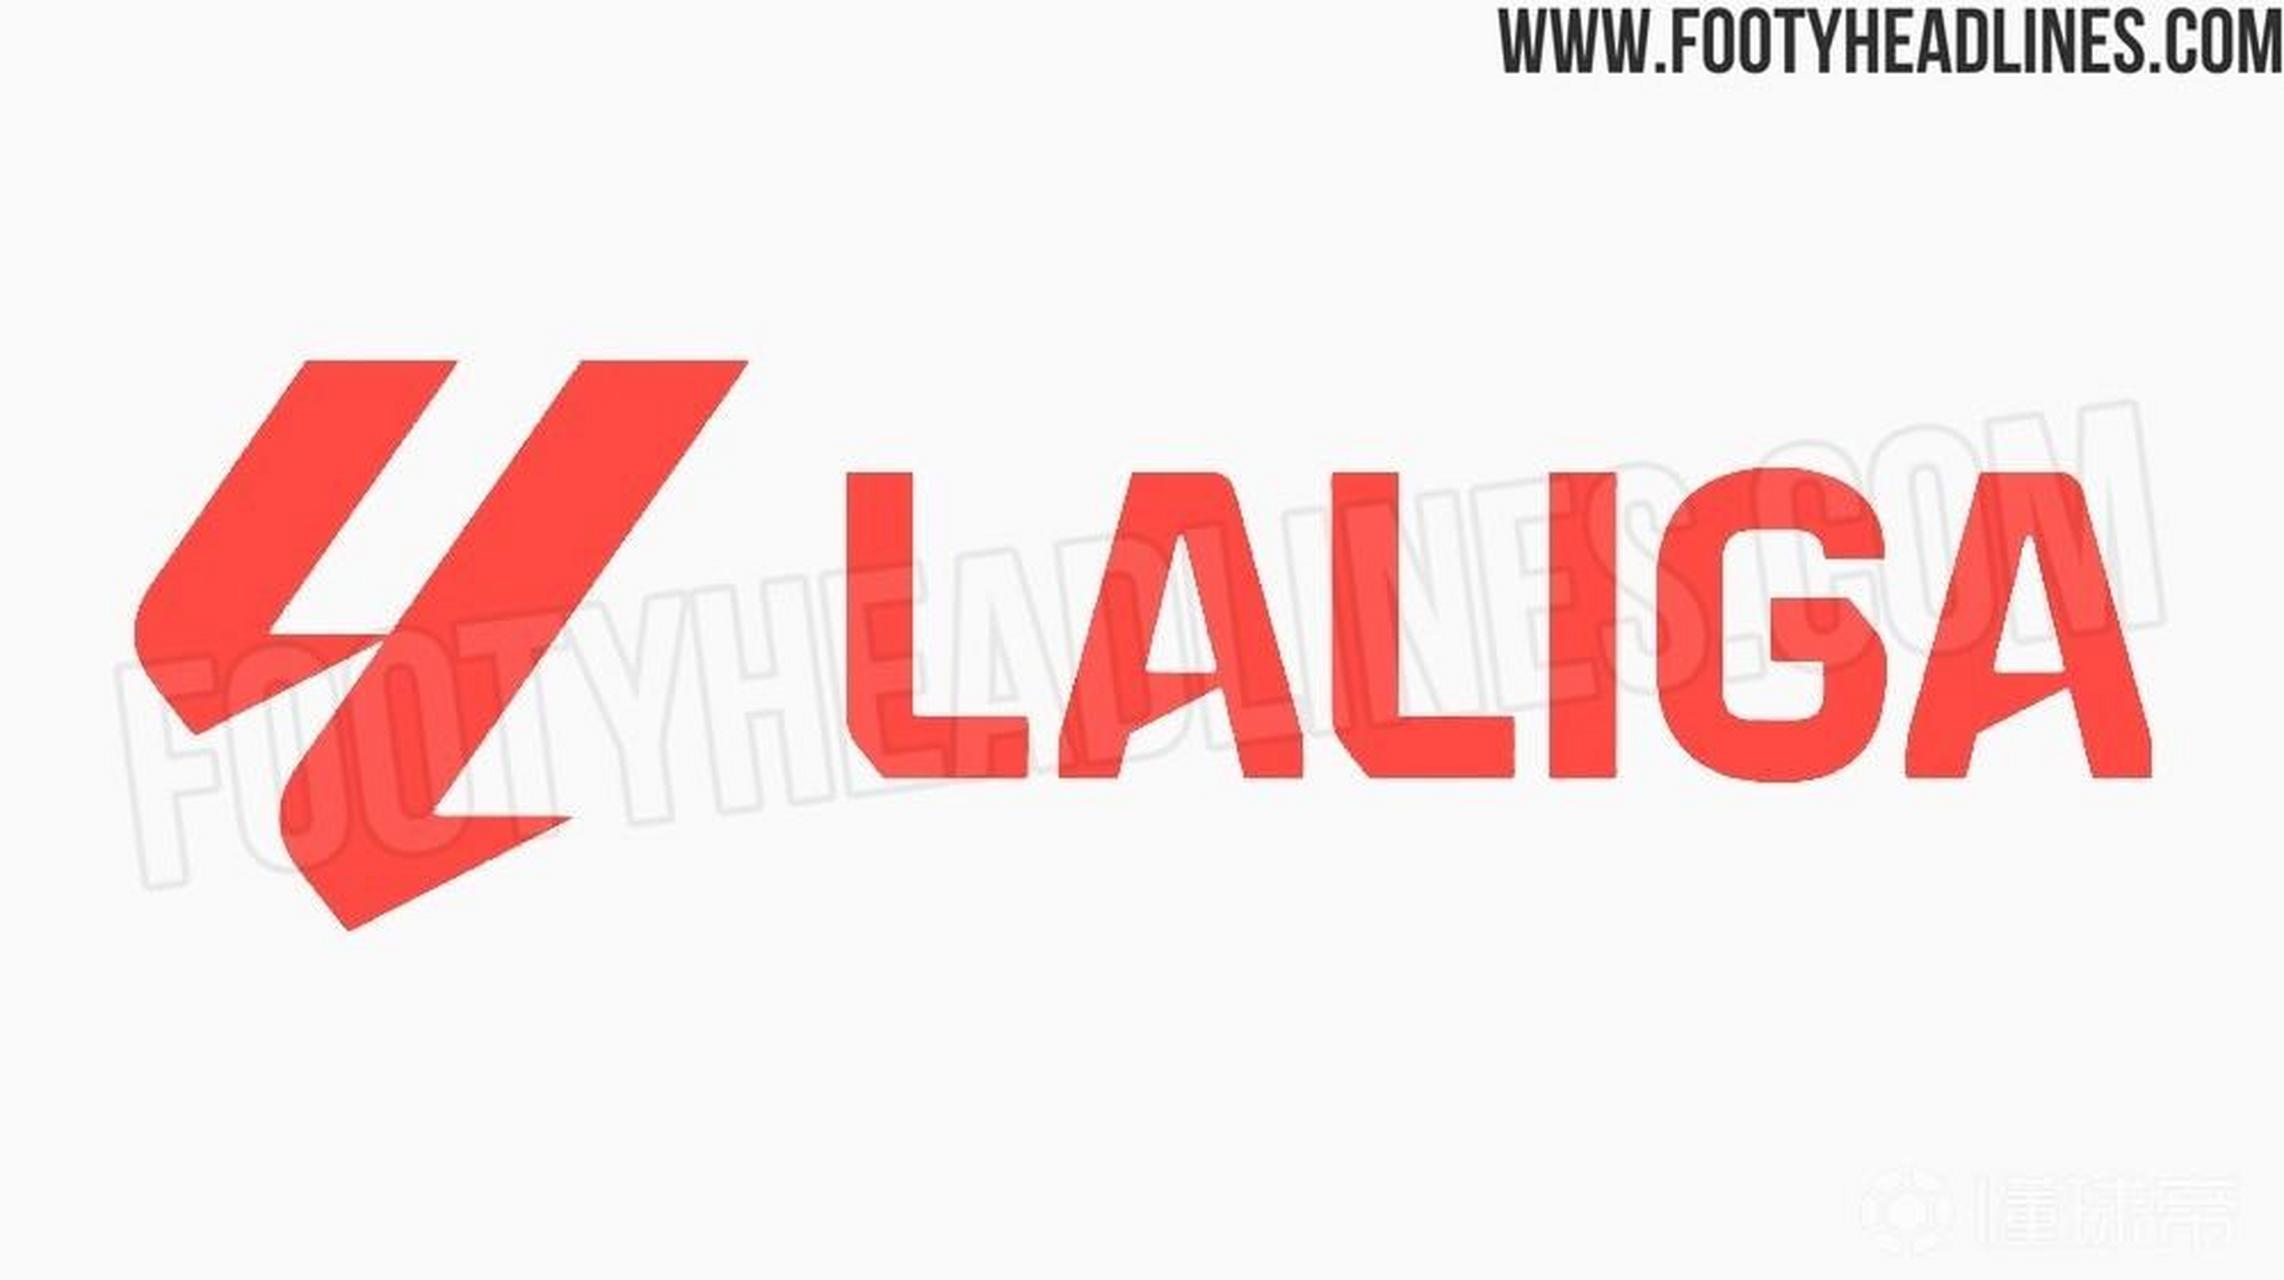 西甲联赛23/24赛季新logo曝光,传统色轮被取代 据知名爆料网站footy